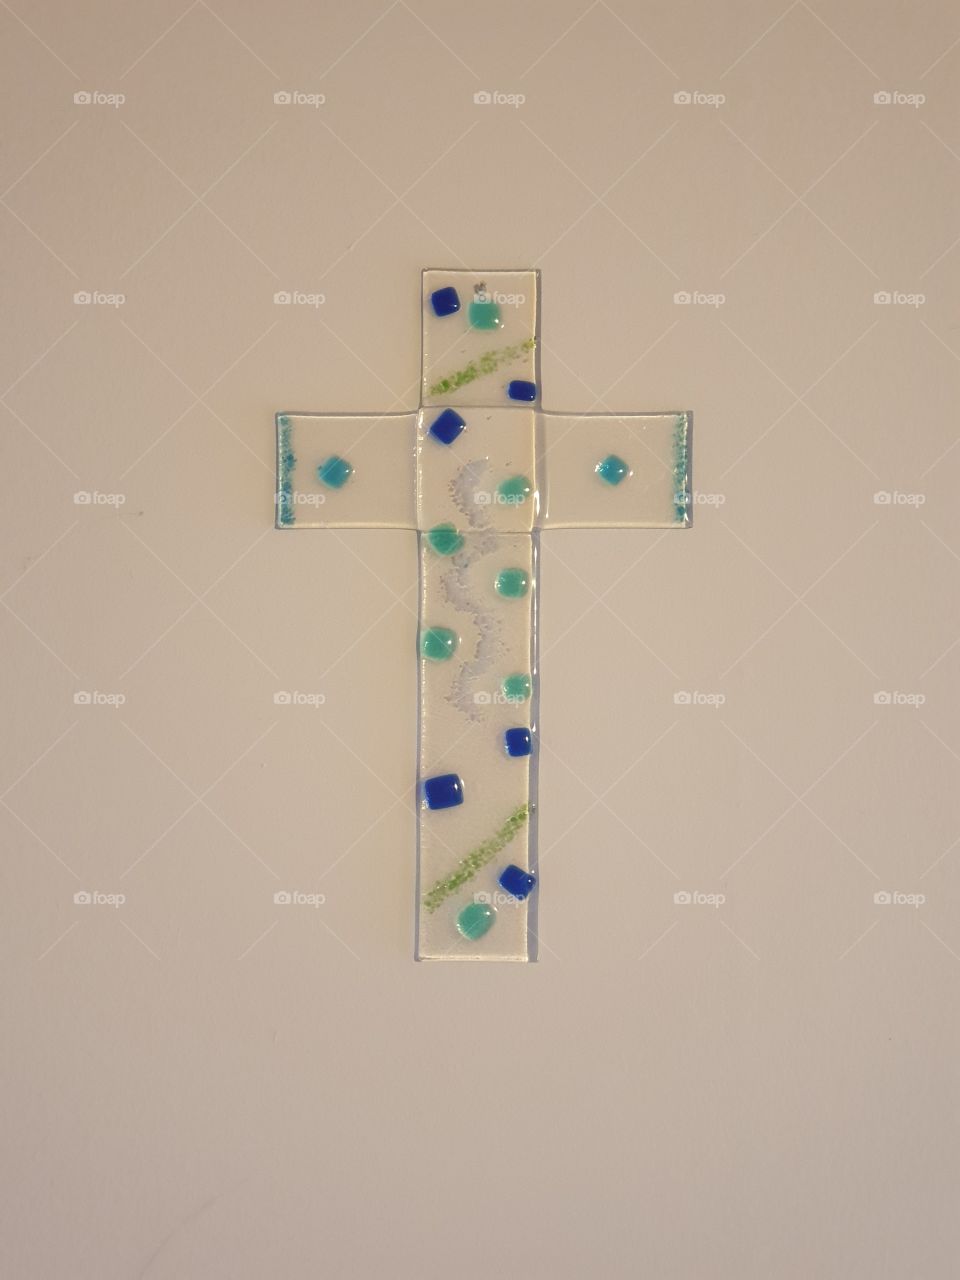 Modernes Jesus Kreuz.
Selbstgemachtes Kreuz aus Glas. 
Jesus Christus zeichen